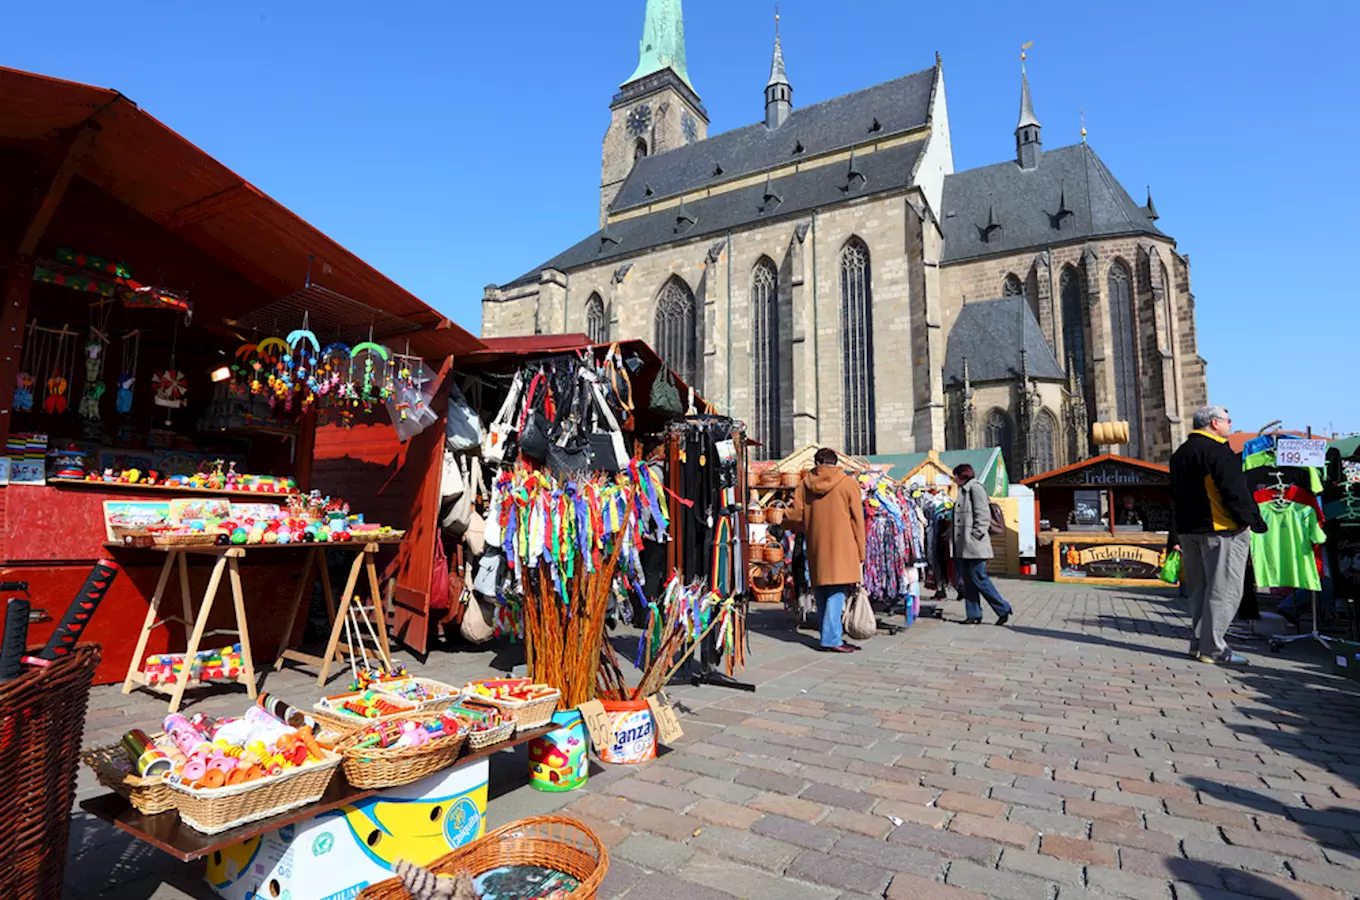 Velikonoce v Plzni jsou plné dobrot i tradičních řemesel